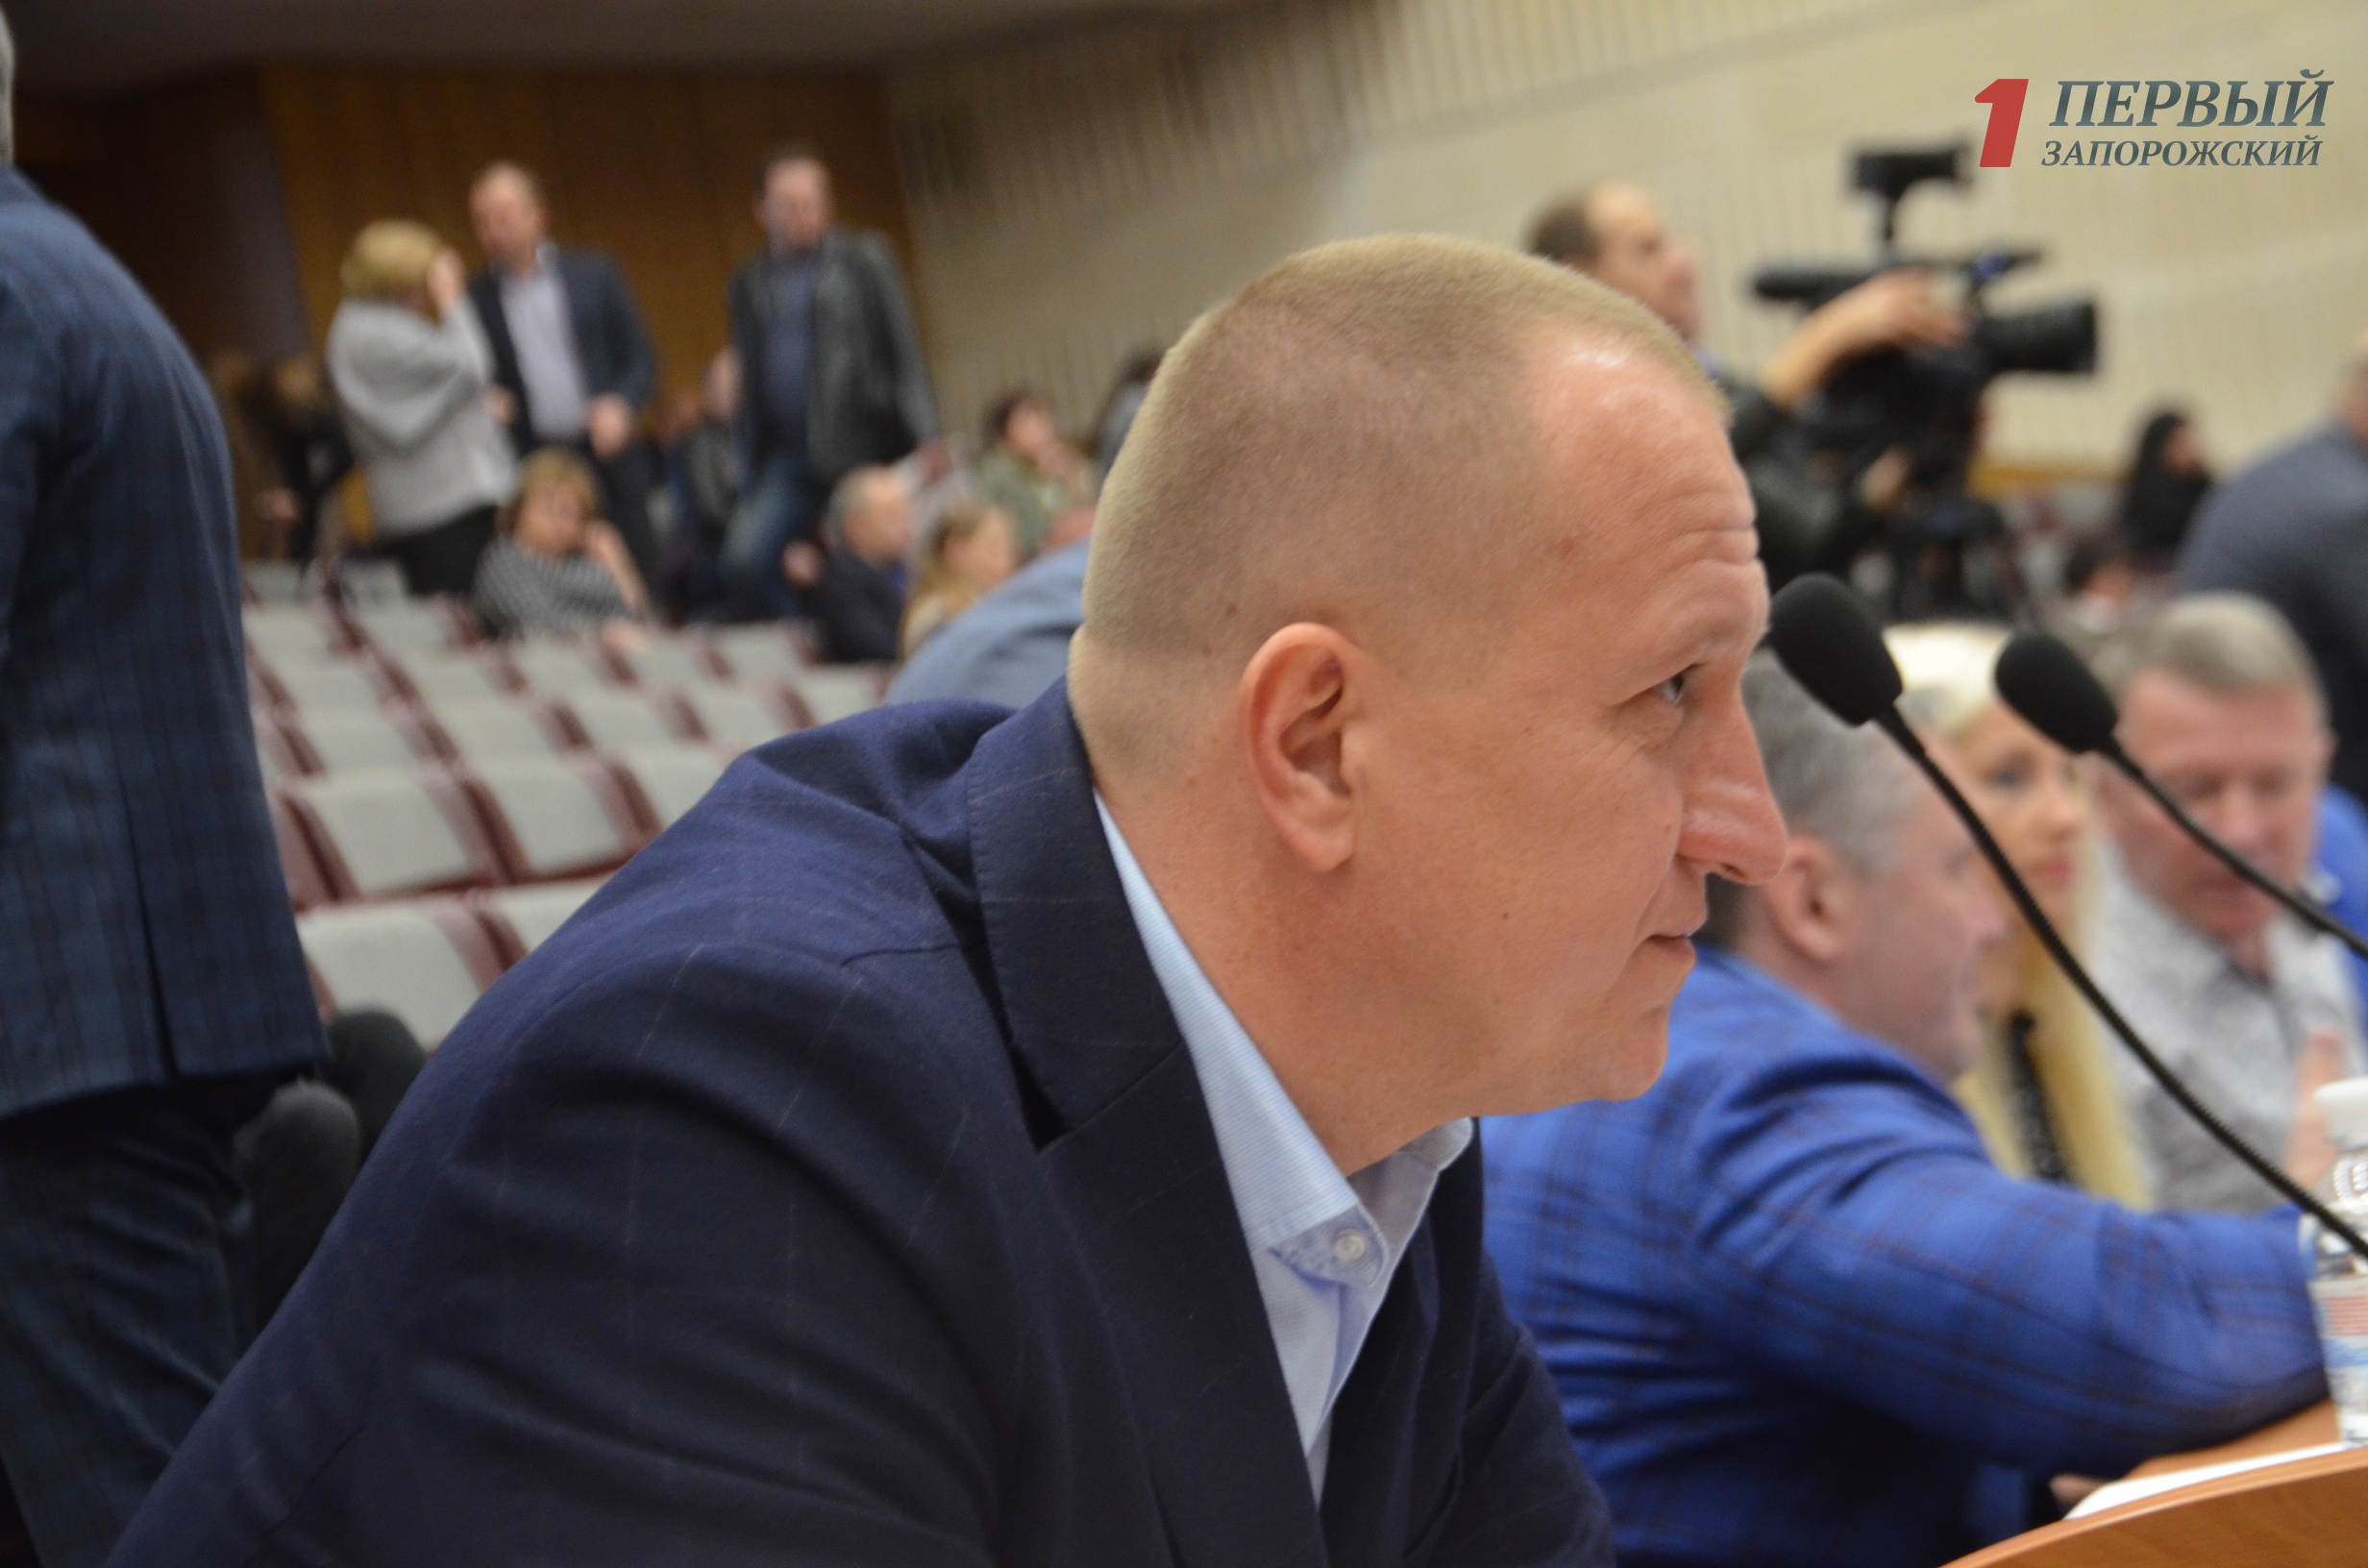 Запорожский депутат пожаловался на неосвоение бюджетных средств департаментом капитального строительства